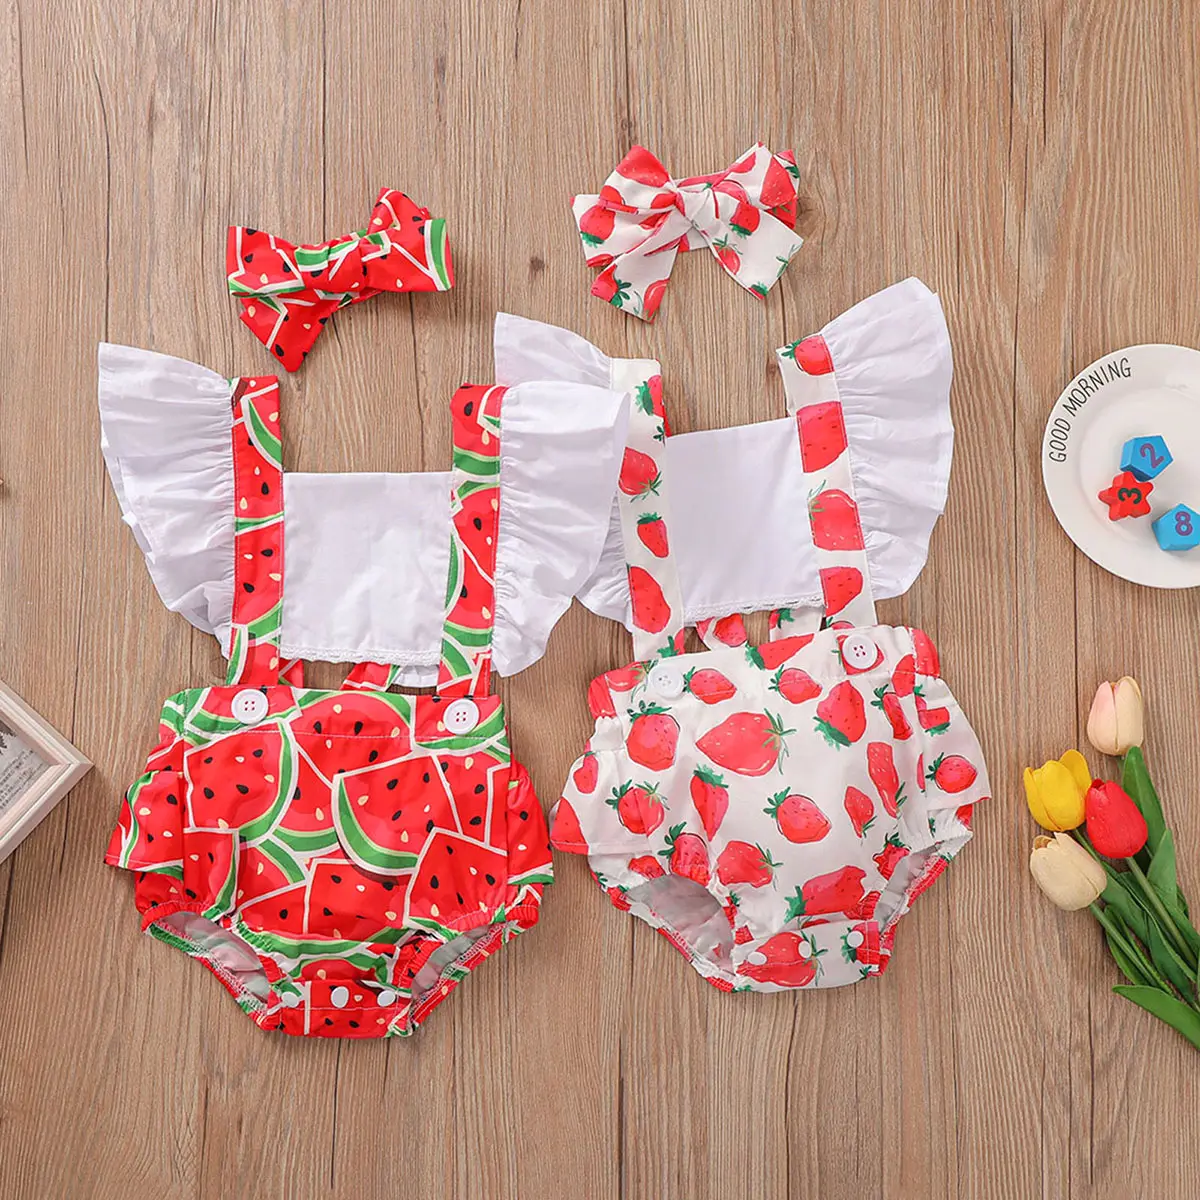 ملابس فضفاضة للأطفال الرضع من البنات مصنوعة من القطن الناعم مطبوع عليها البطيخ والفراولة